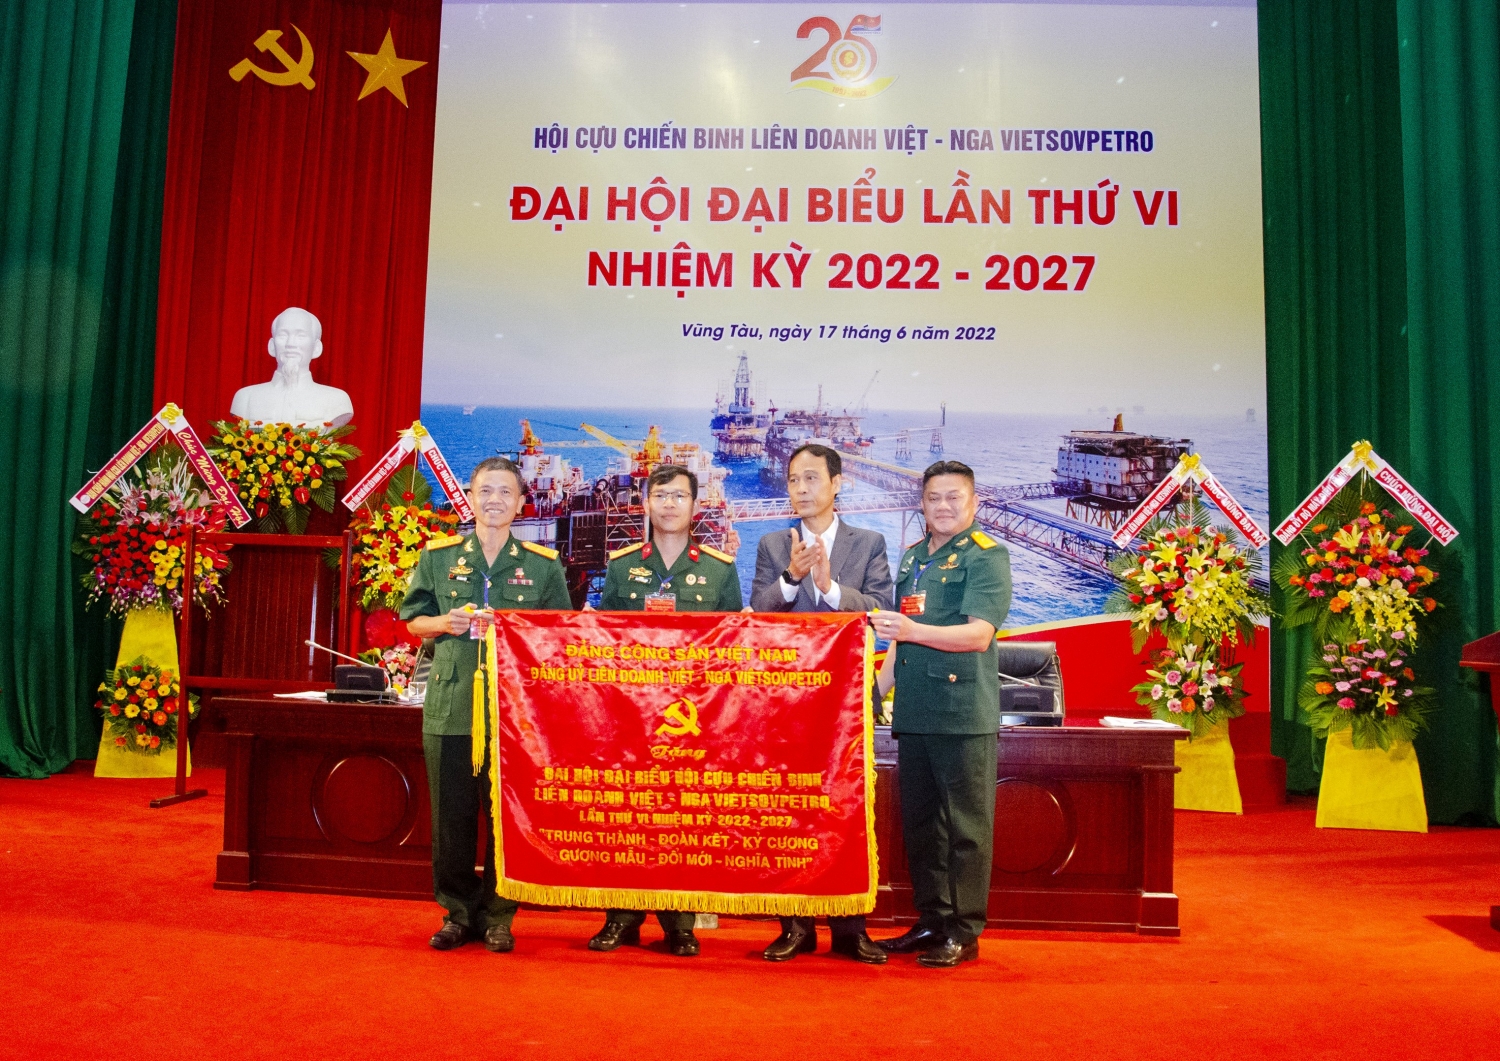 Ông Nguyễn Quỳnh Lâm- Bí thư đảng ủy, Tổng giám đốc trao tặng bức trướng cho đại hội